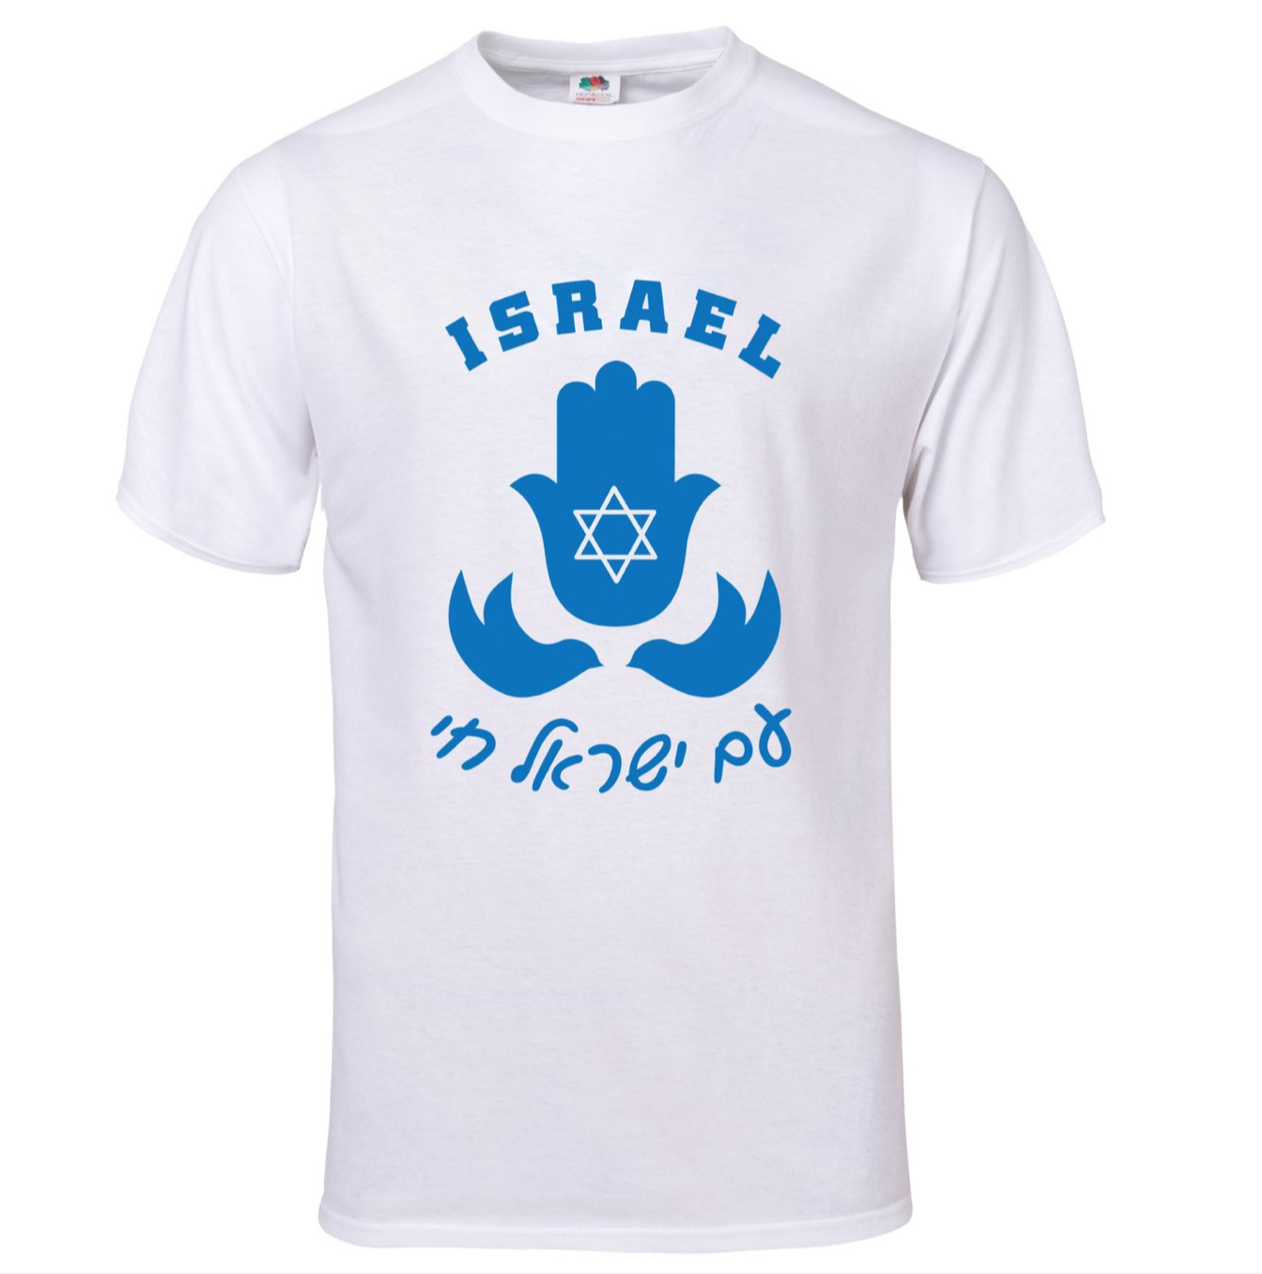 Israel Spirit Shirt